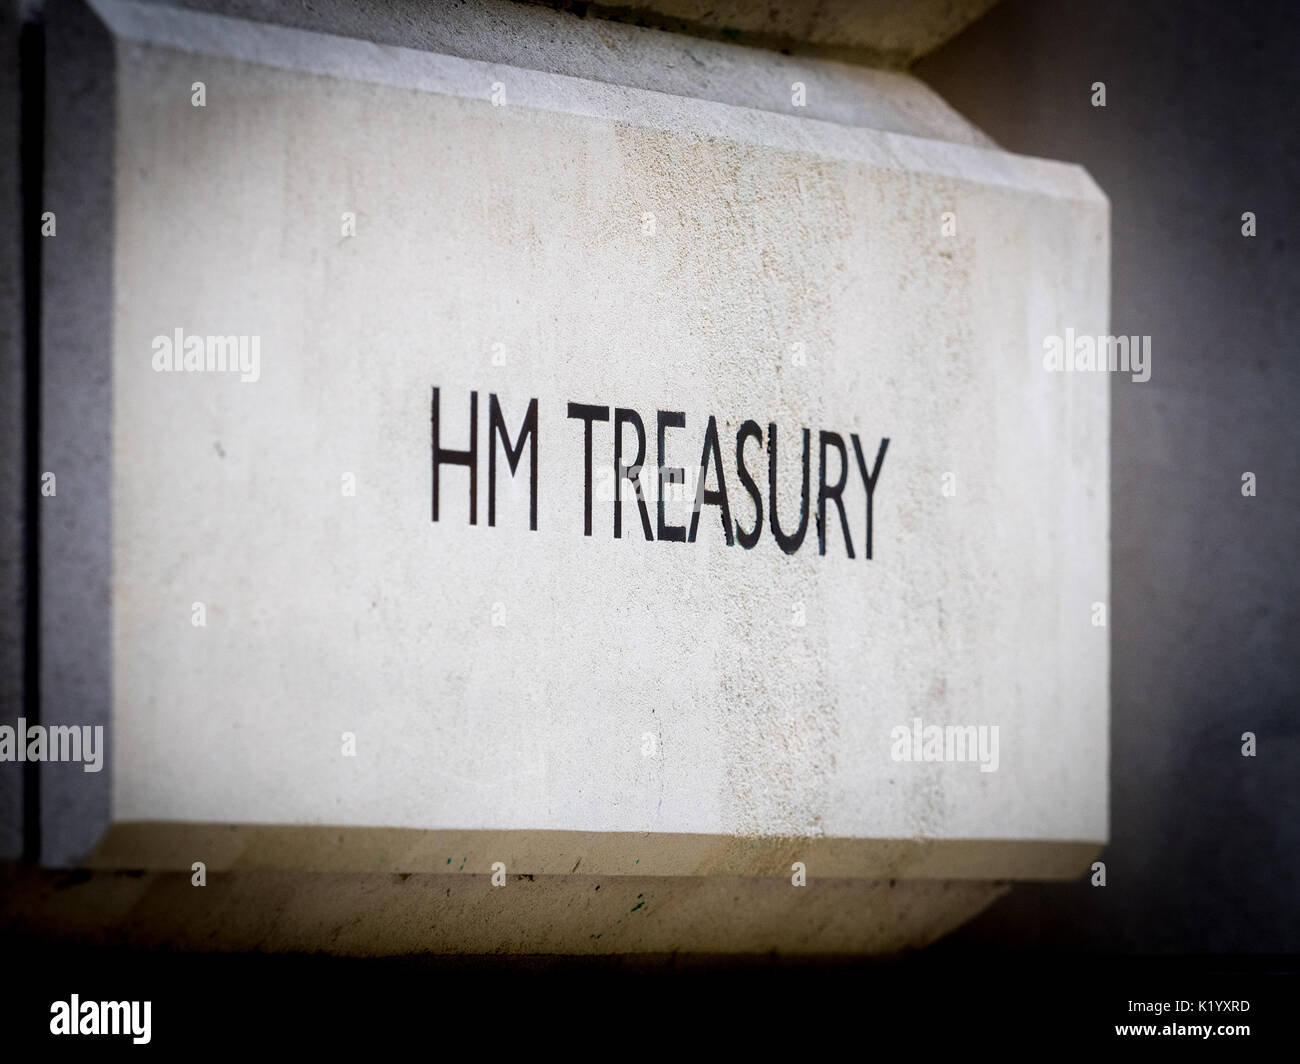 HM Treasury Office à Horse Guards Rd, Westminster, Londres, Royaume-Uni. Le Trésor est le ministère des Finances, contrôle et coordonne les dépenses du gouvernement du Royaume-Uni Banque D'Images